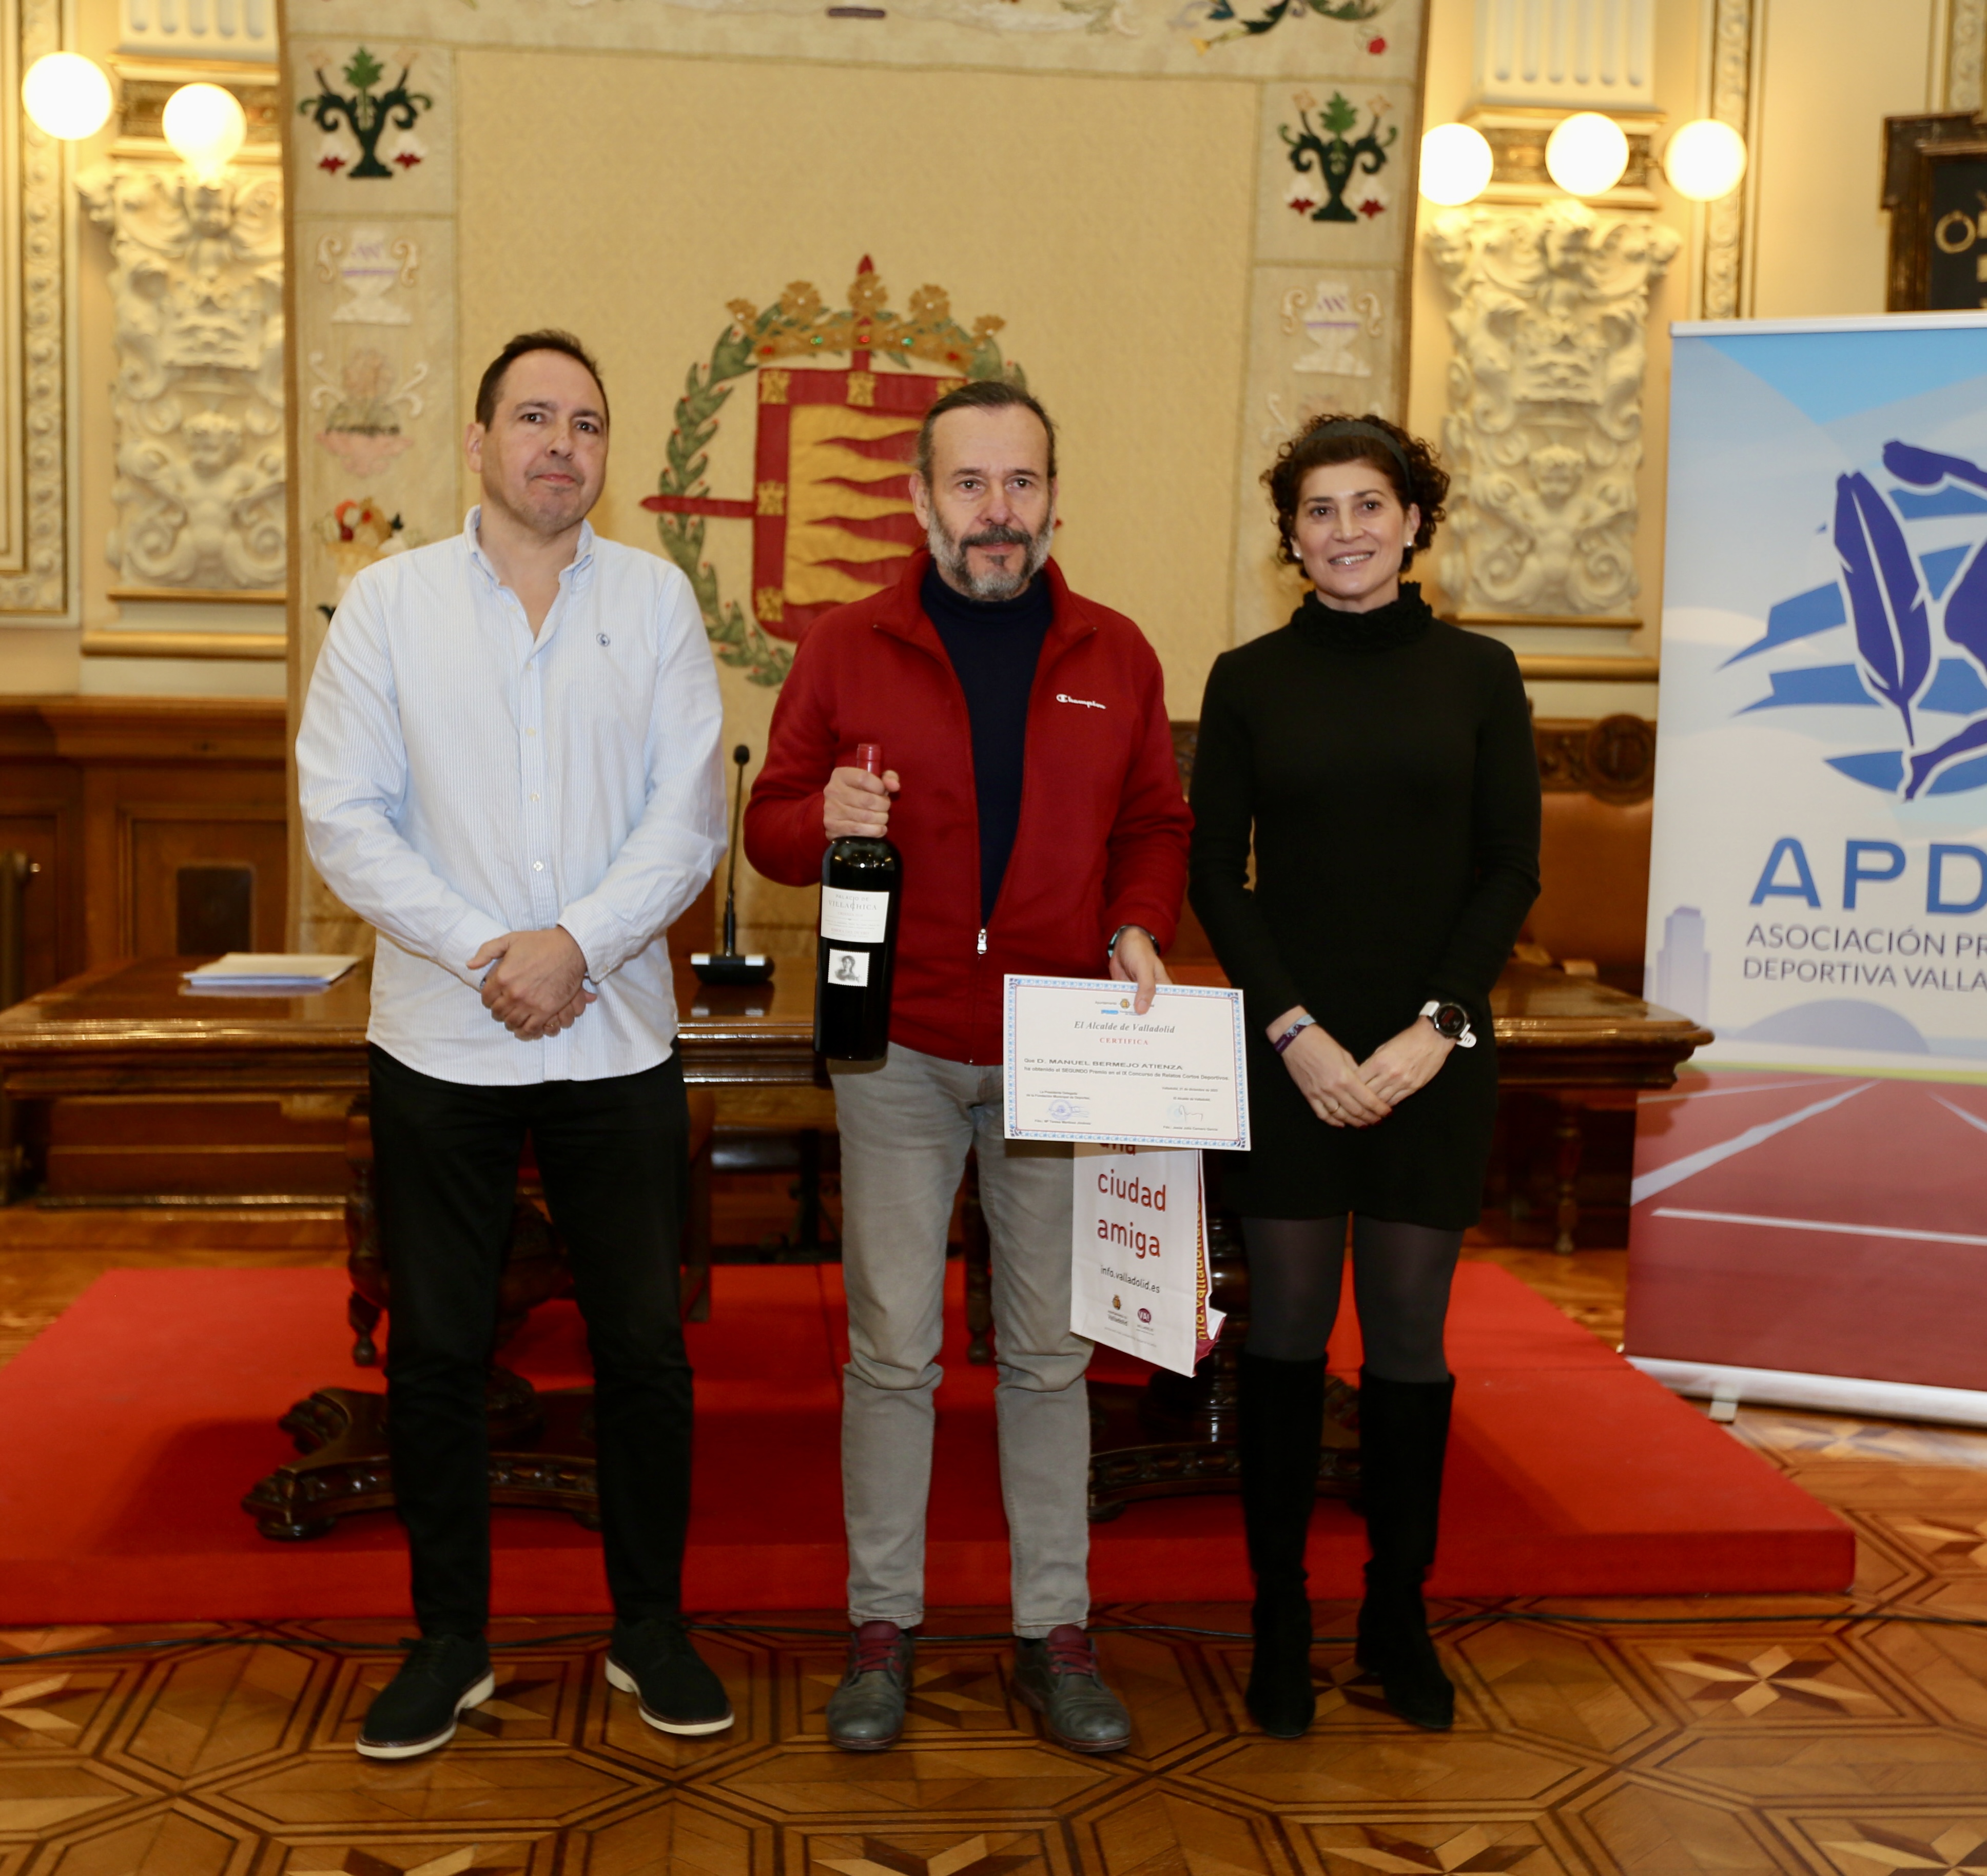 2º Premio Manuel Bermejo Atienza entrega el premio Luis Miguel de Pablos Escalona vicepresidente de la Asociación de la Prensa Deportiva de Valladolid